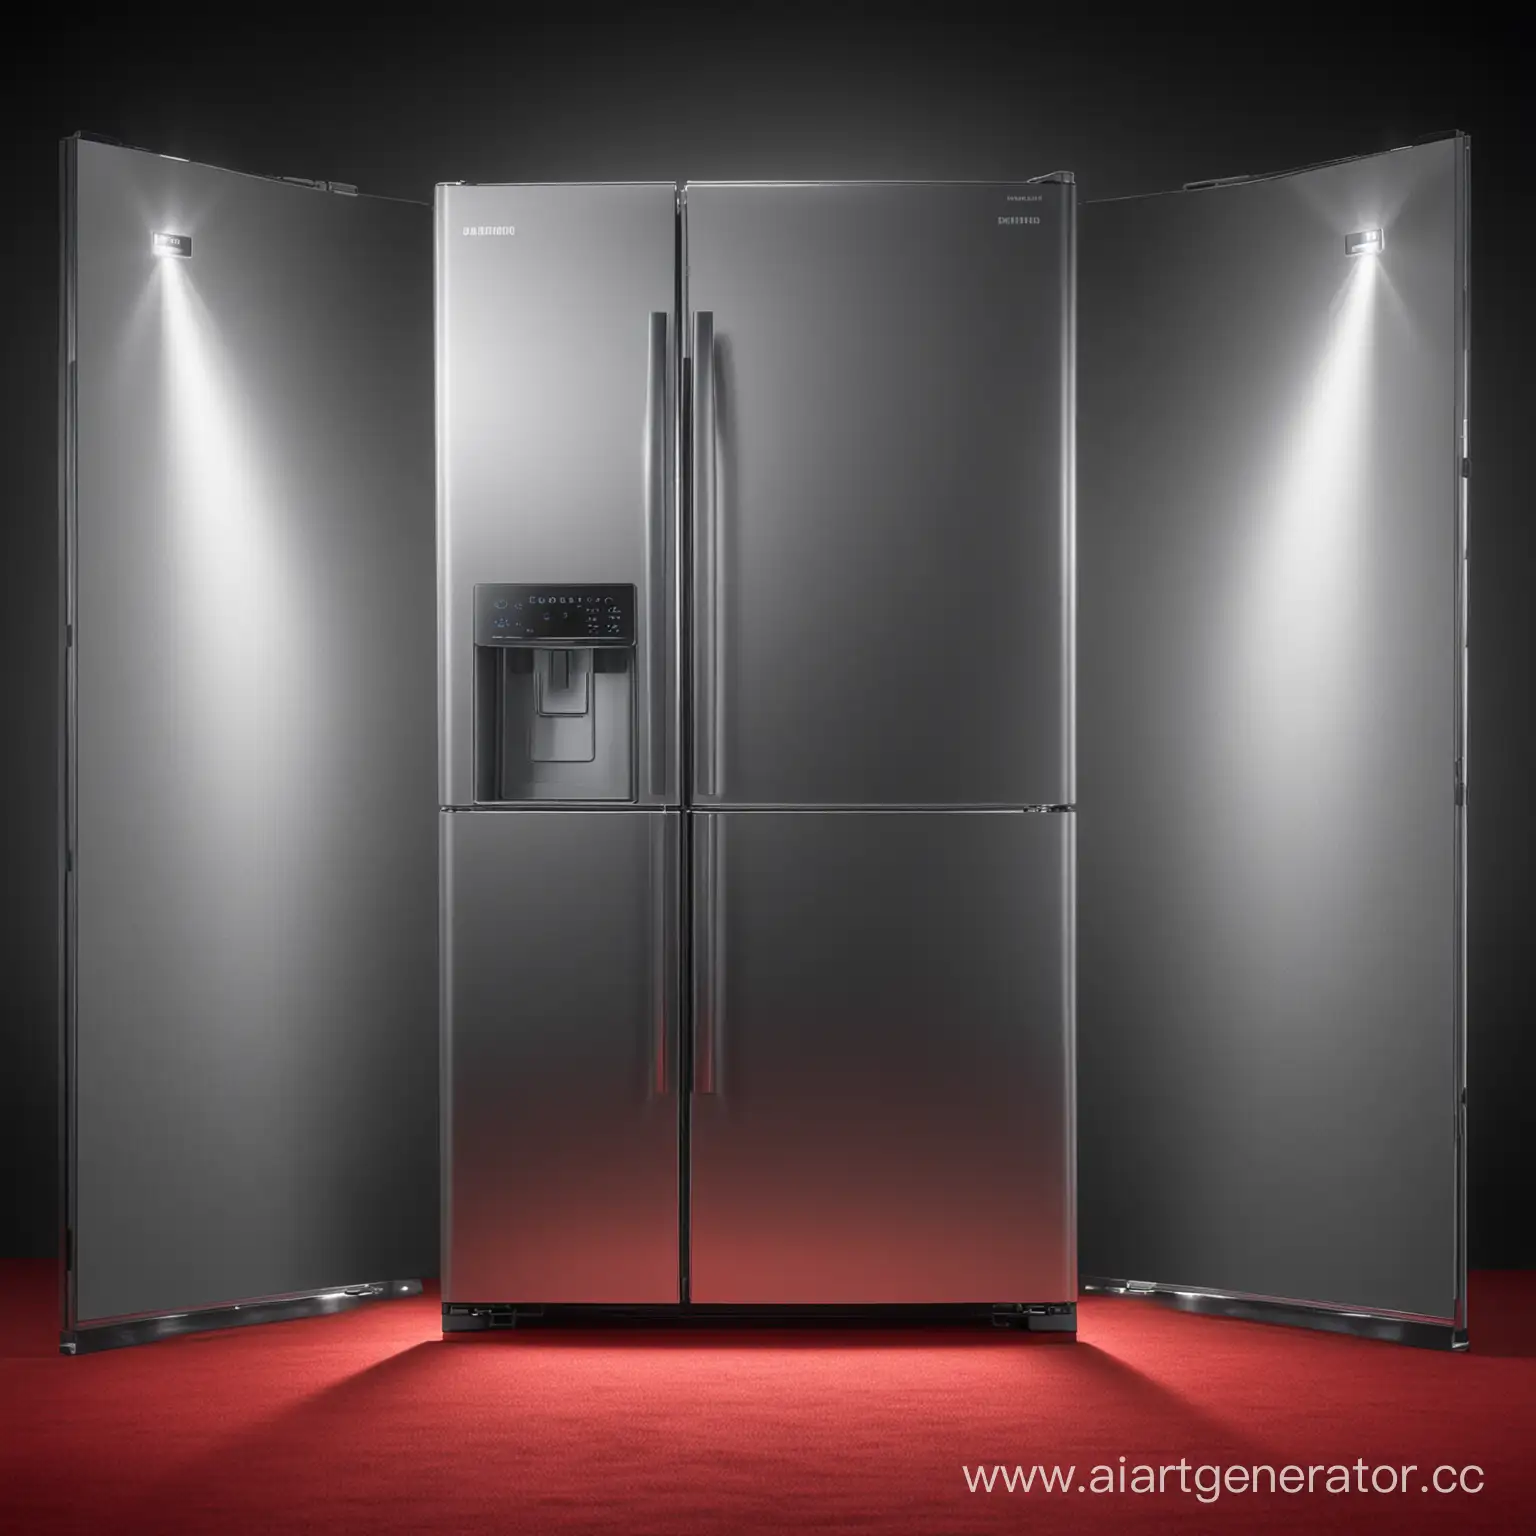 холодильник самсунг подсвеченный прожекторами на красной ковровой дорожке 